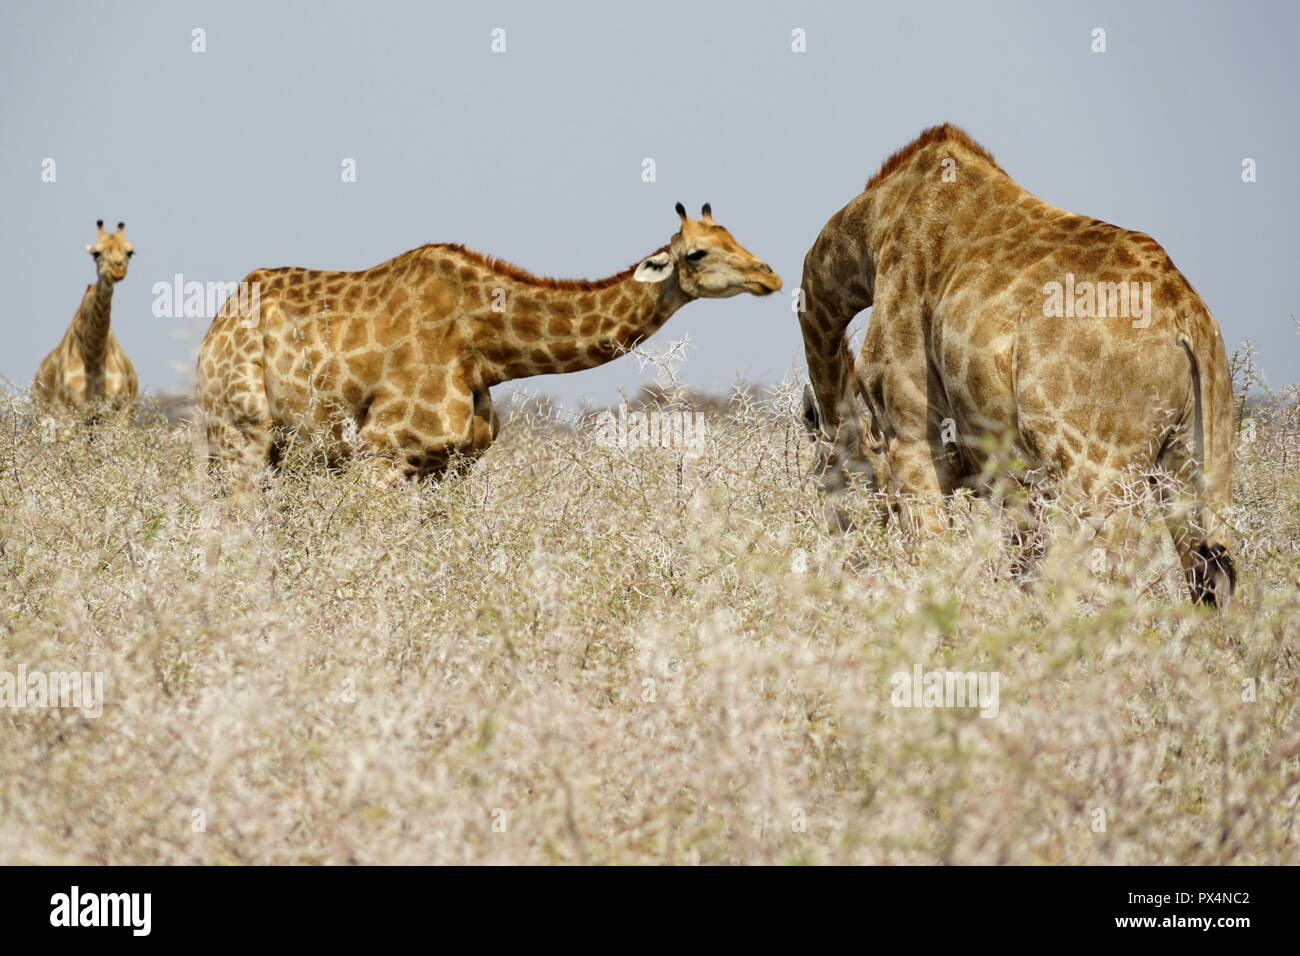 Giraffen fressen an trockenen Dornbüschen, Etosha Nationalpark, Republik Namibia, Afrika Stock Photo